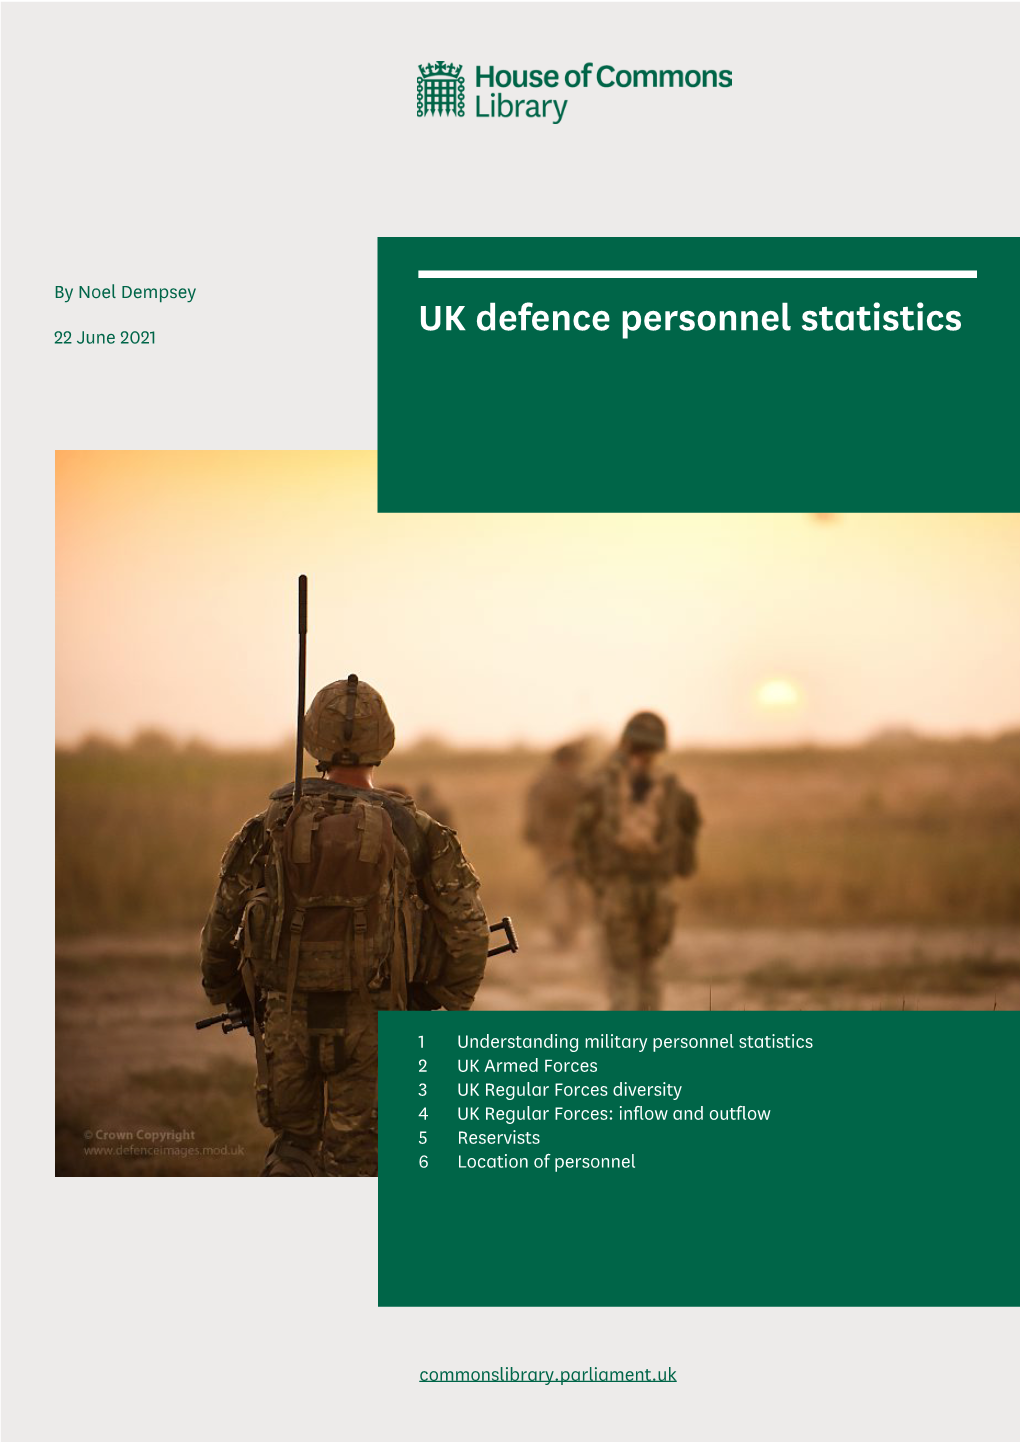 UK Defence Personnel Statistics